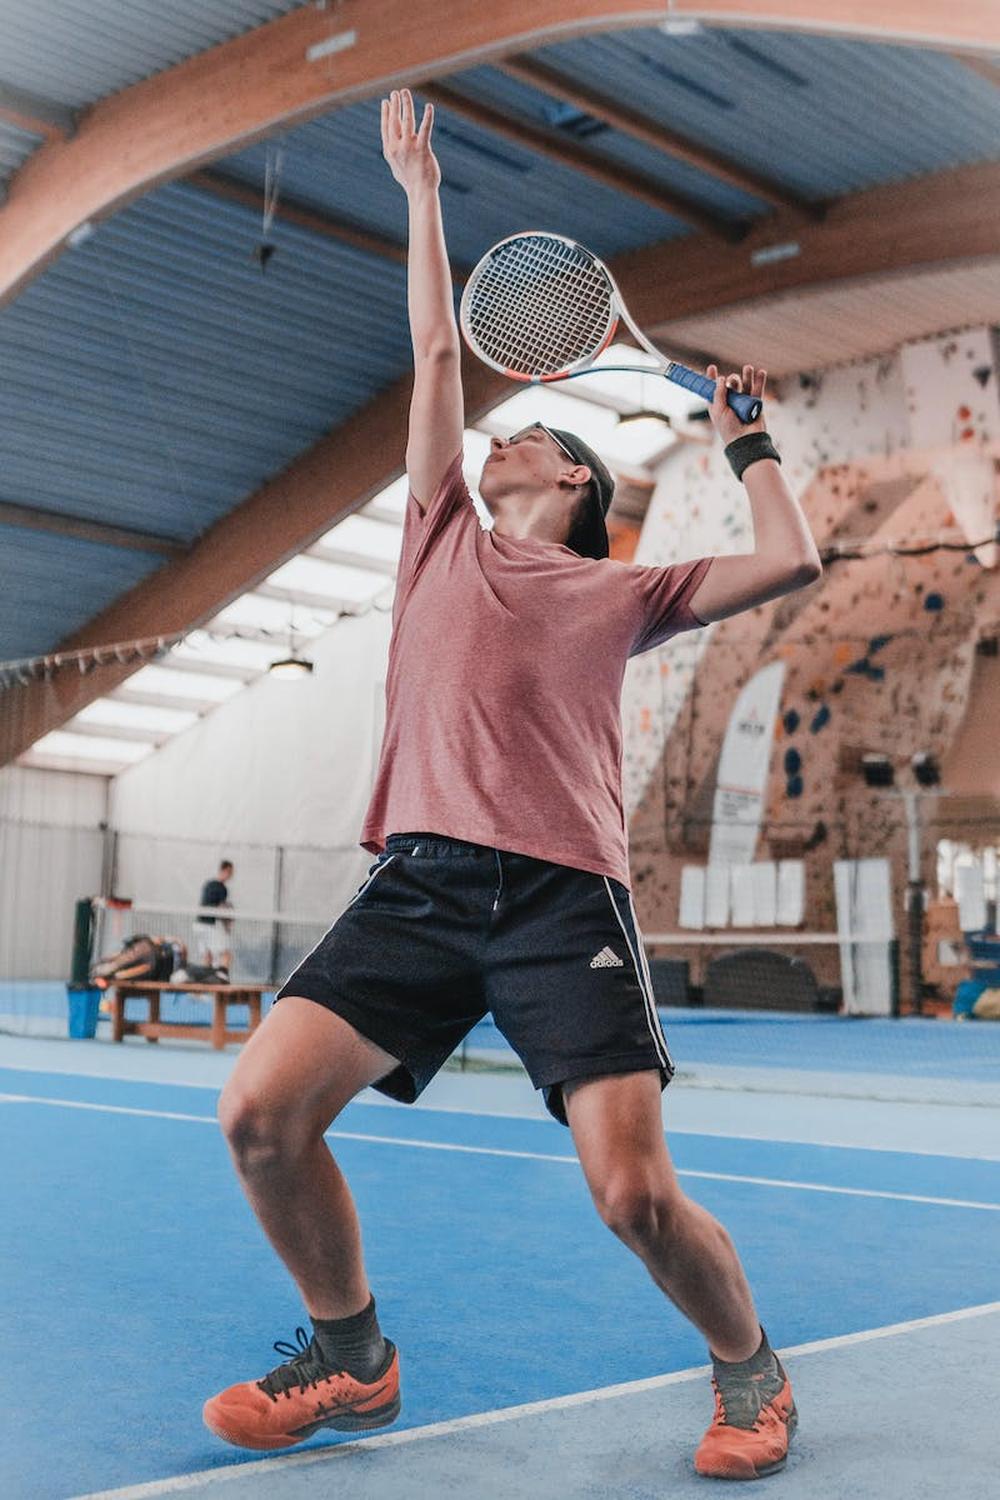 photo_of_man_playing_tennis